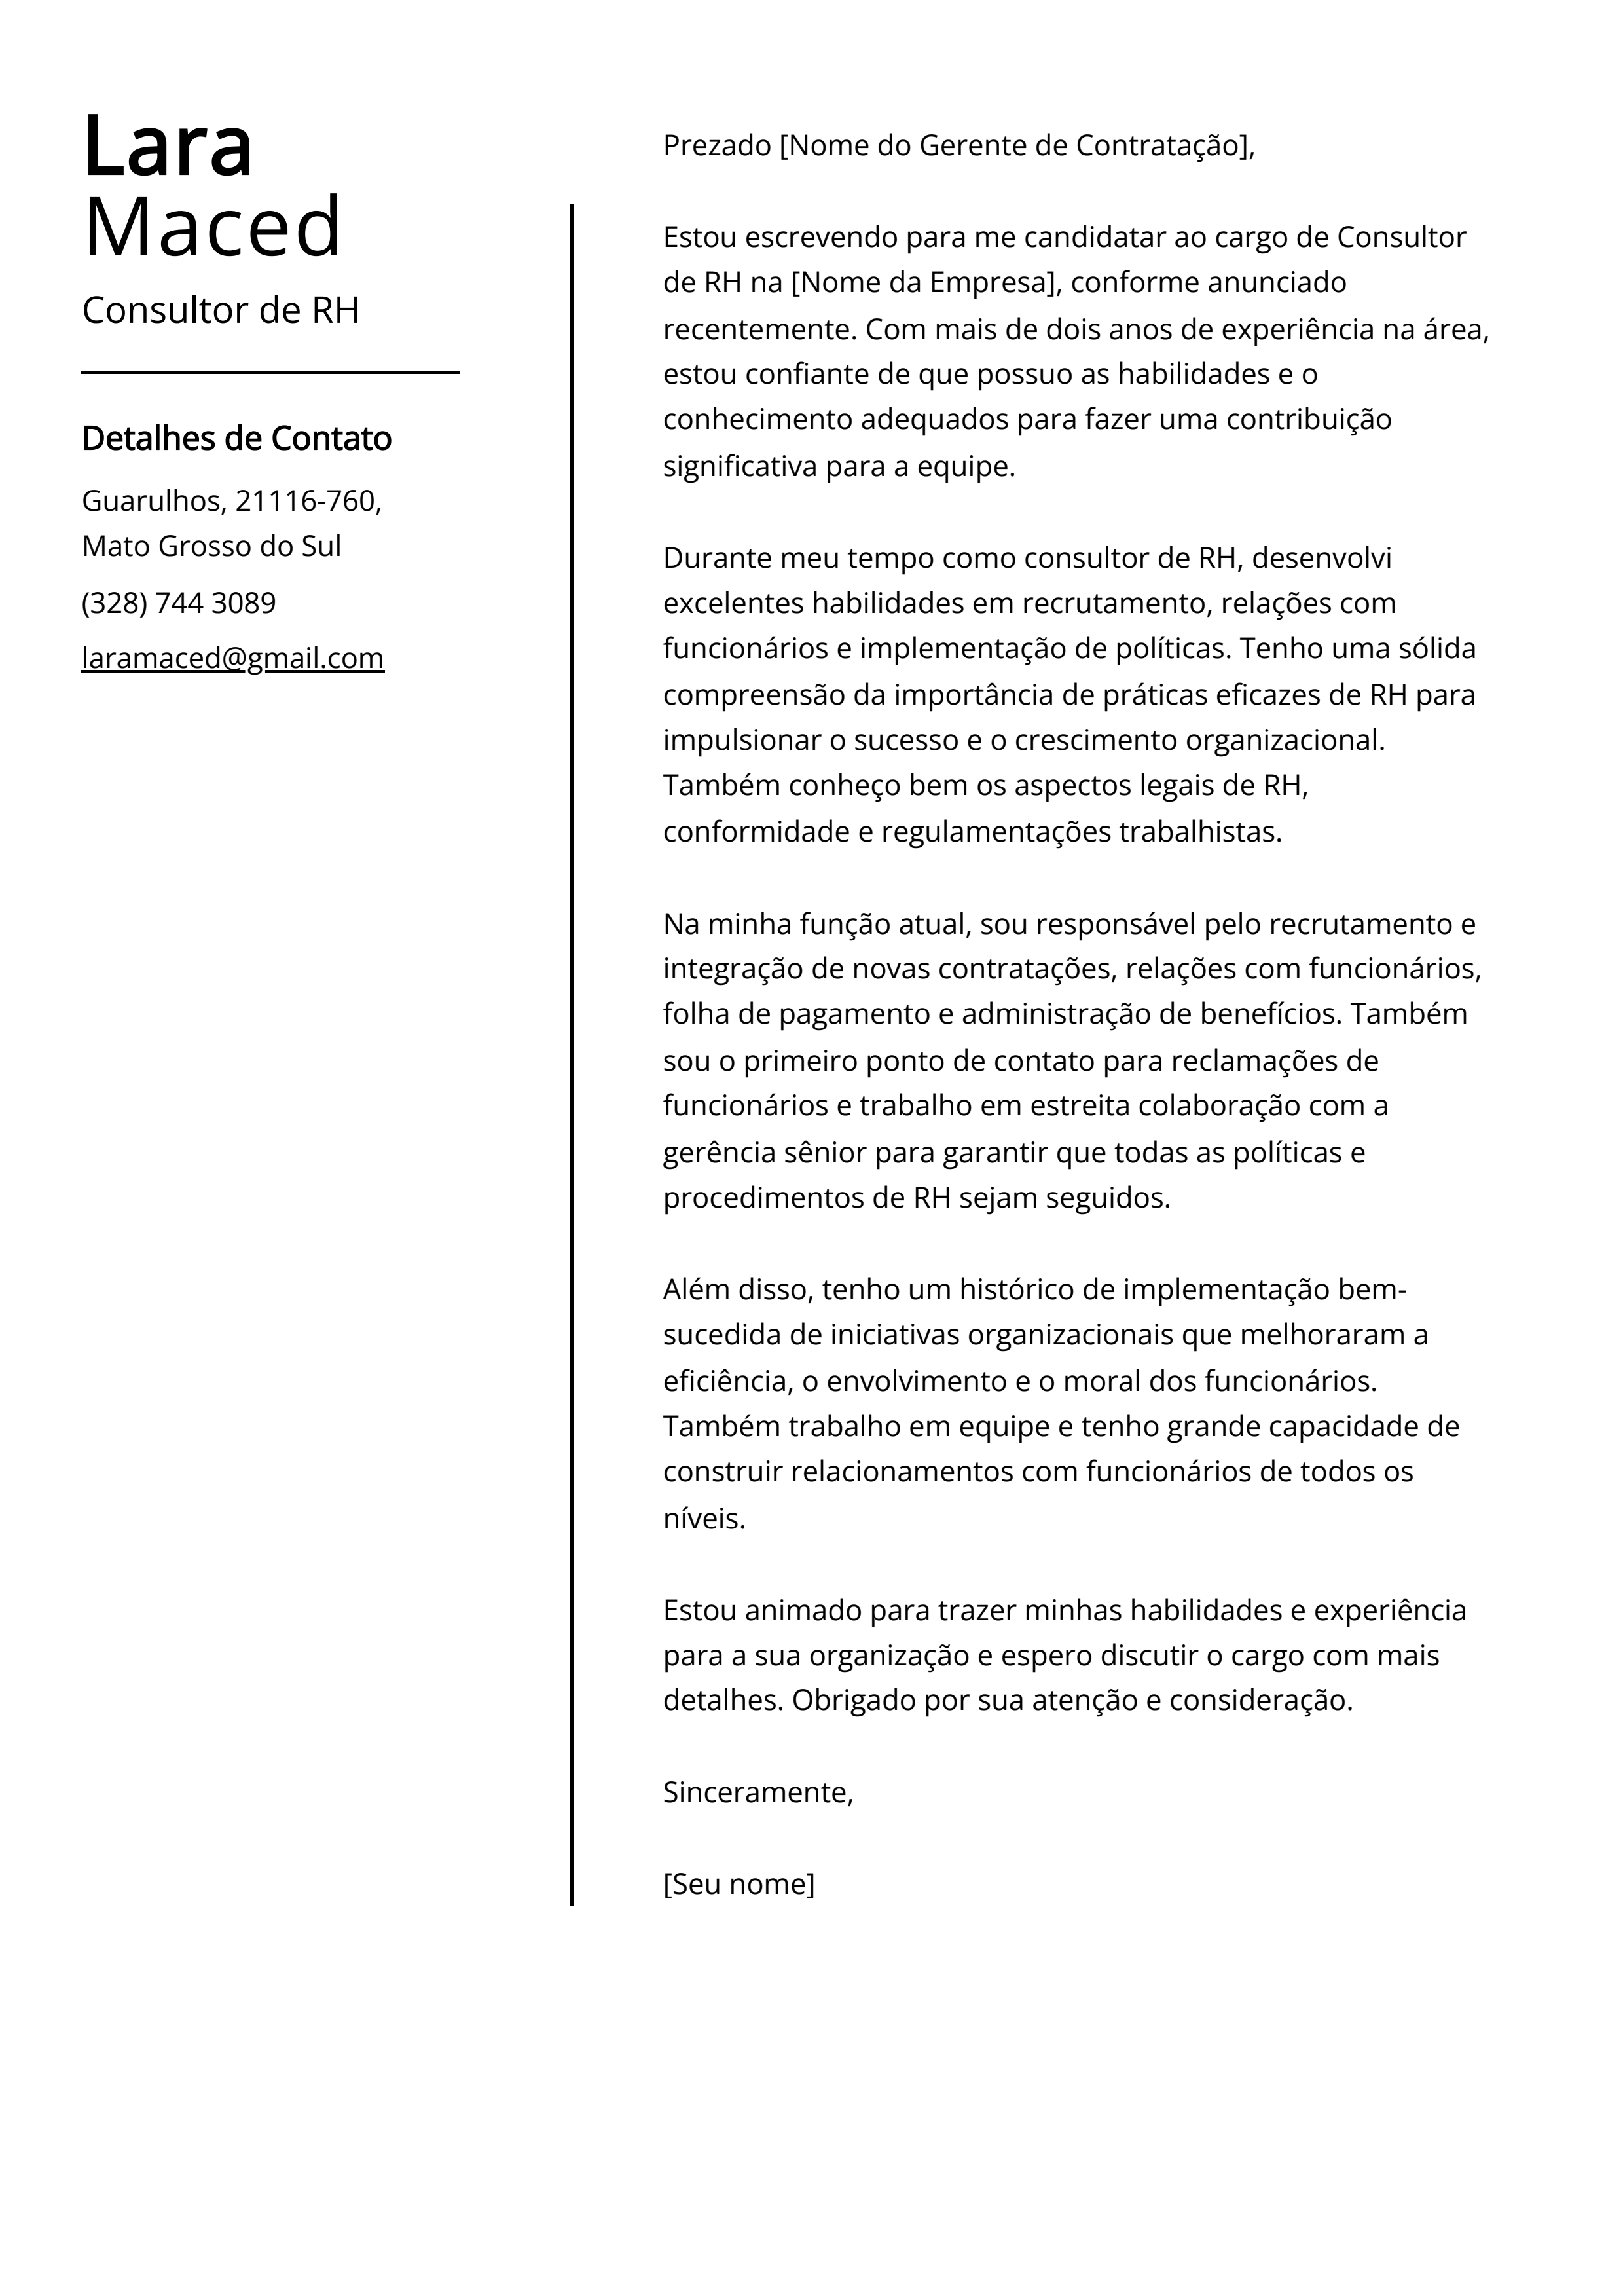 Exemplo de carta de apresentação do Consultor de RH